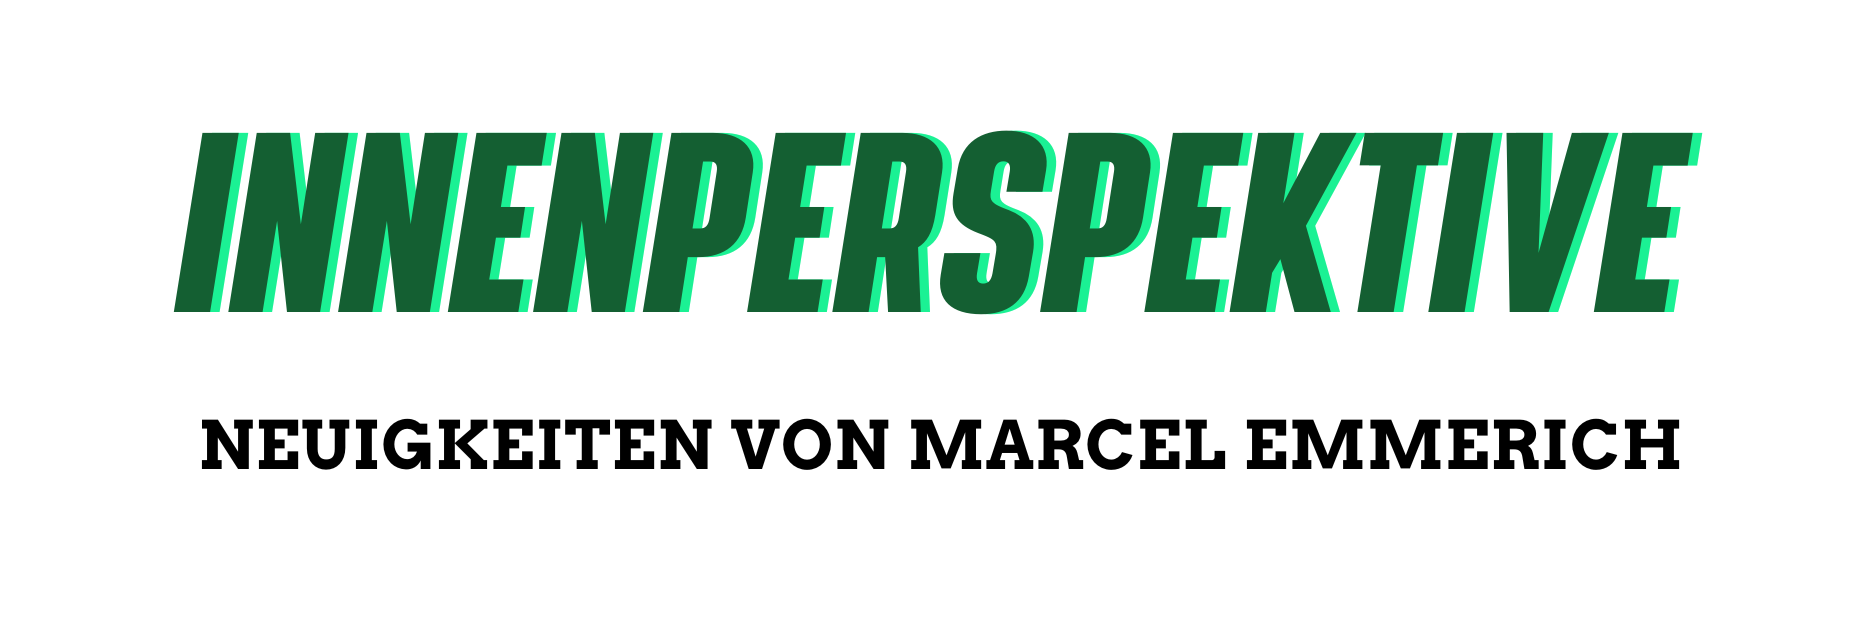 Innenperspektive - Neuigkeiten von Marcel Emmerich